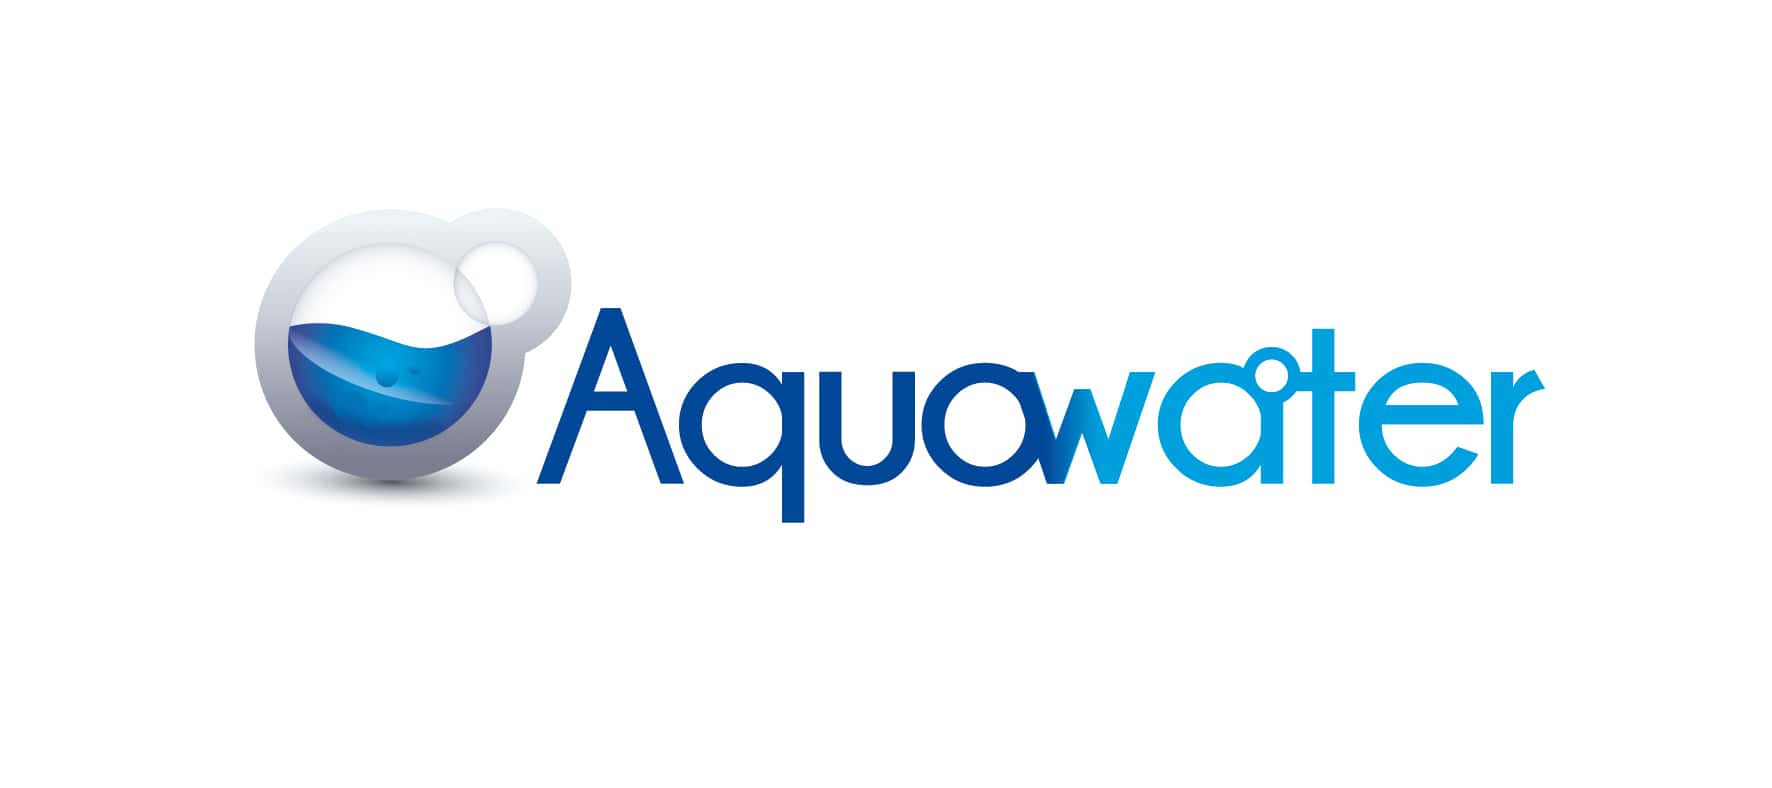 Régénérant pour adoucisseur d'eau à résine Aqua Power 250 ml